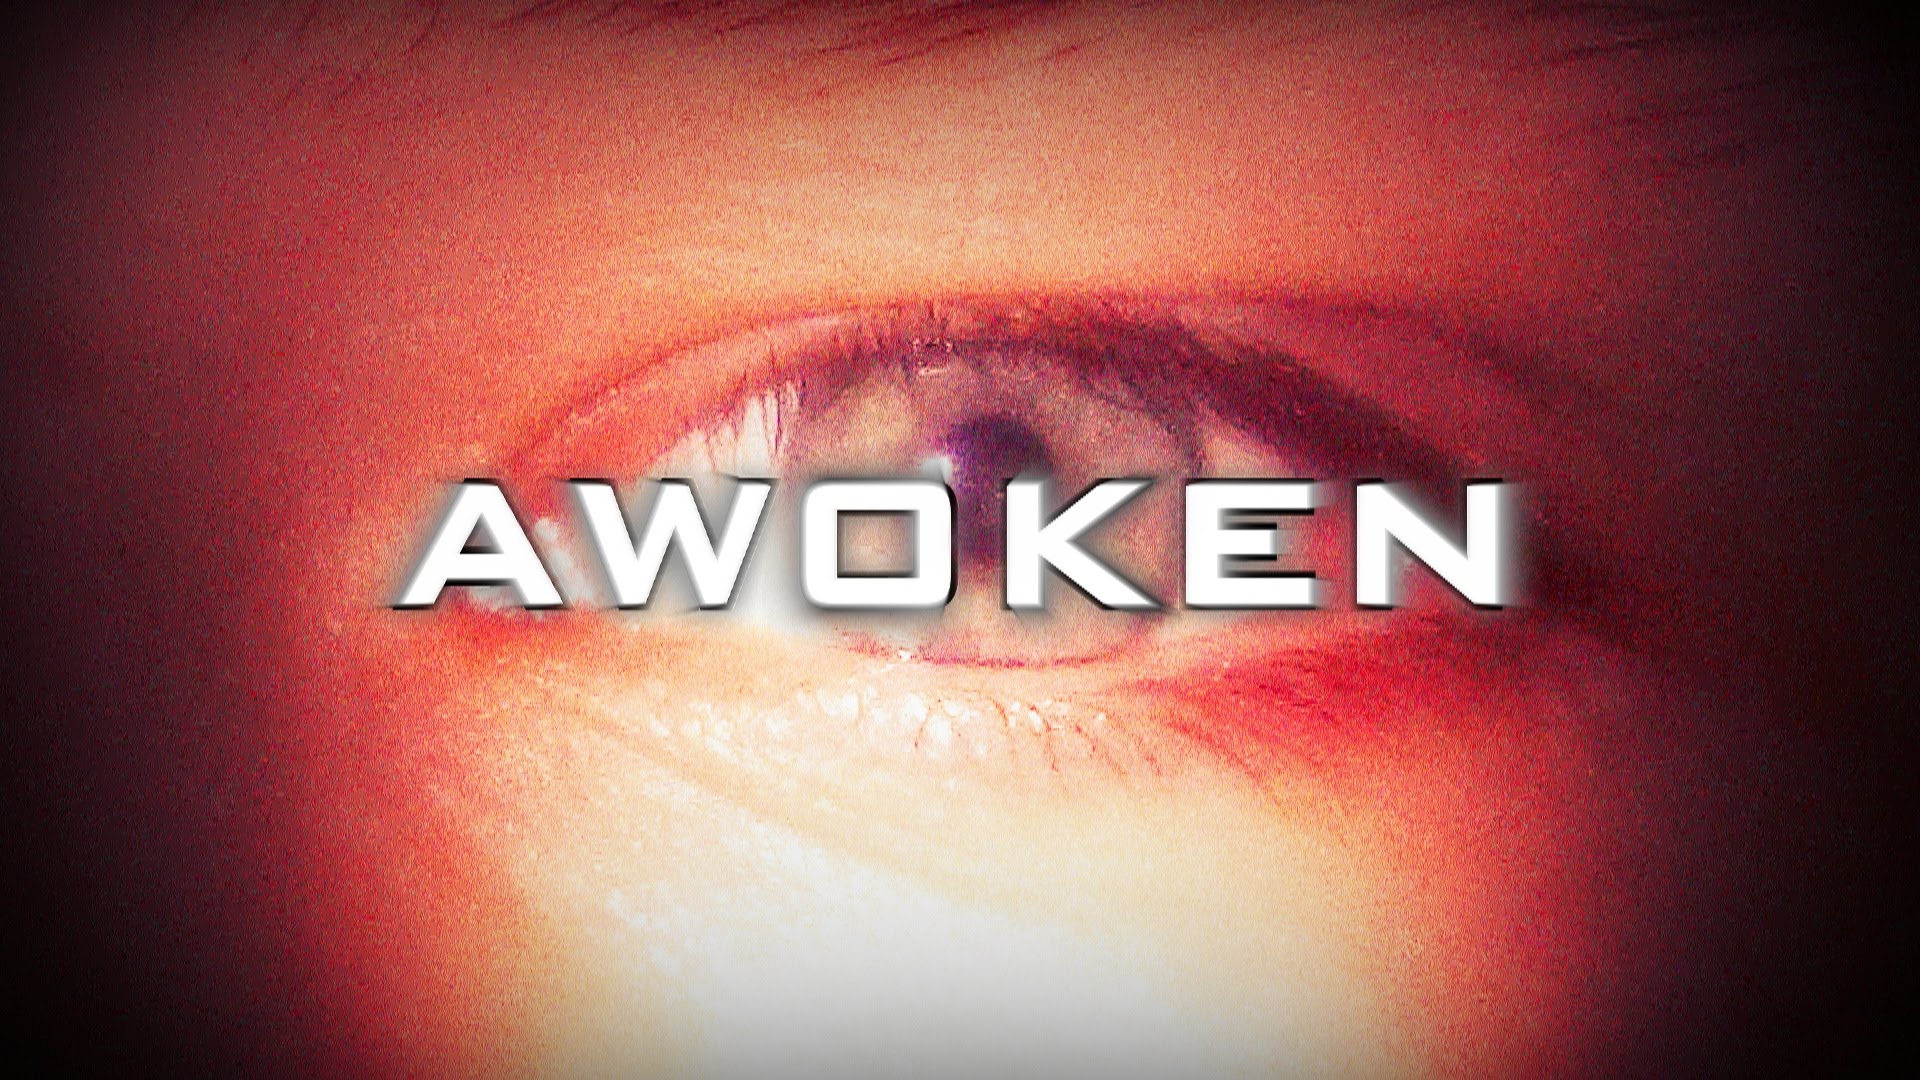 AWOKEN (FULL DOCUMENTARY 2014)